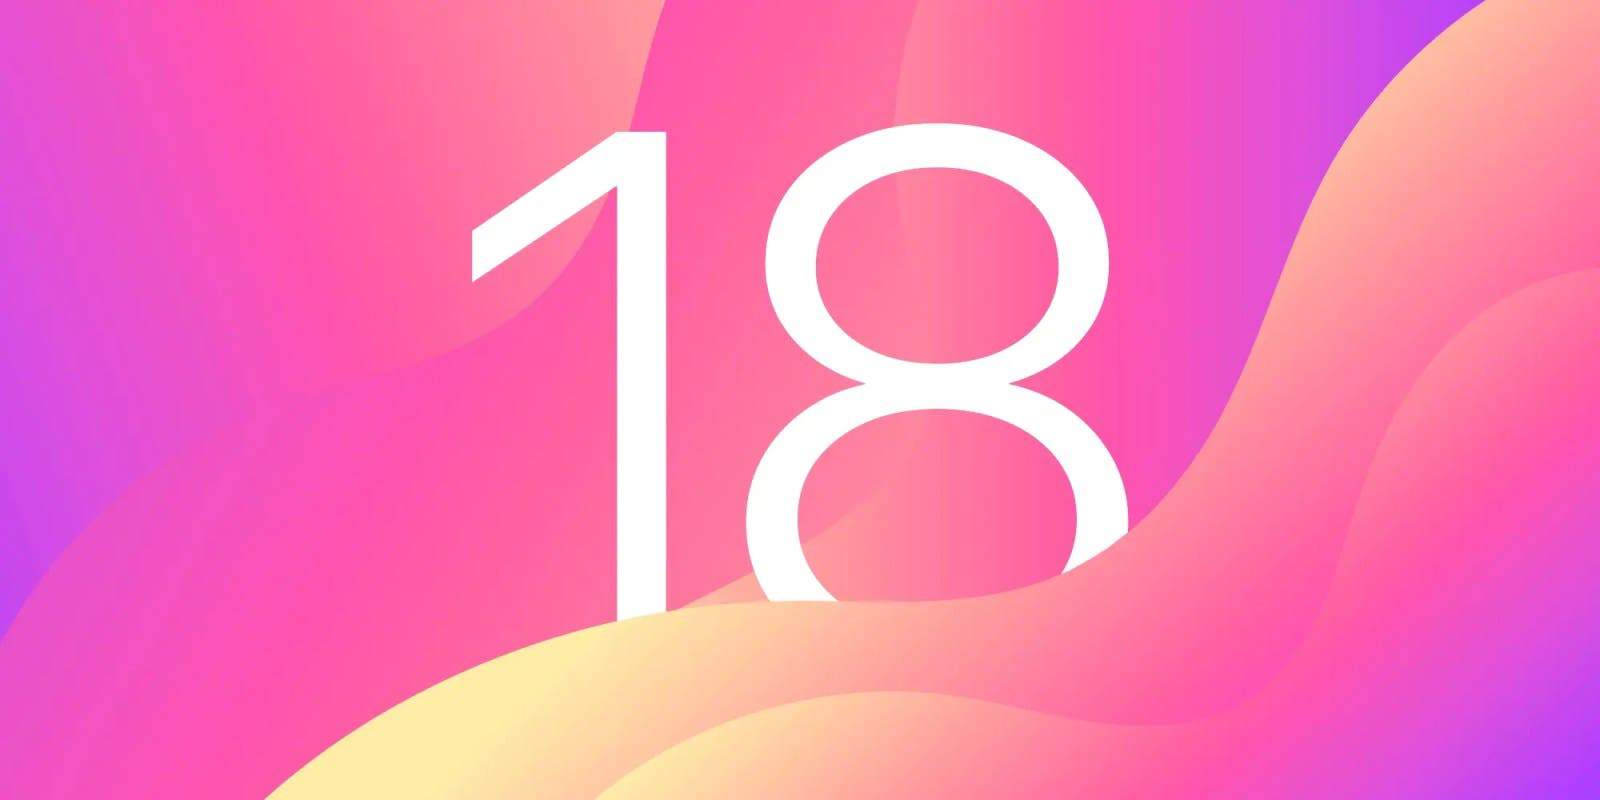 "iOS 18